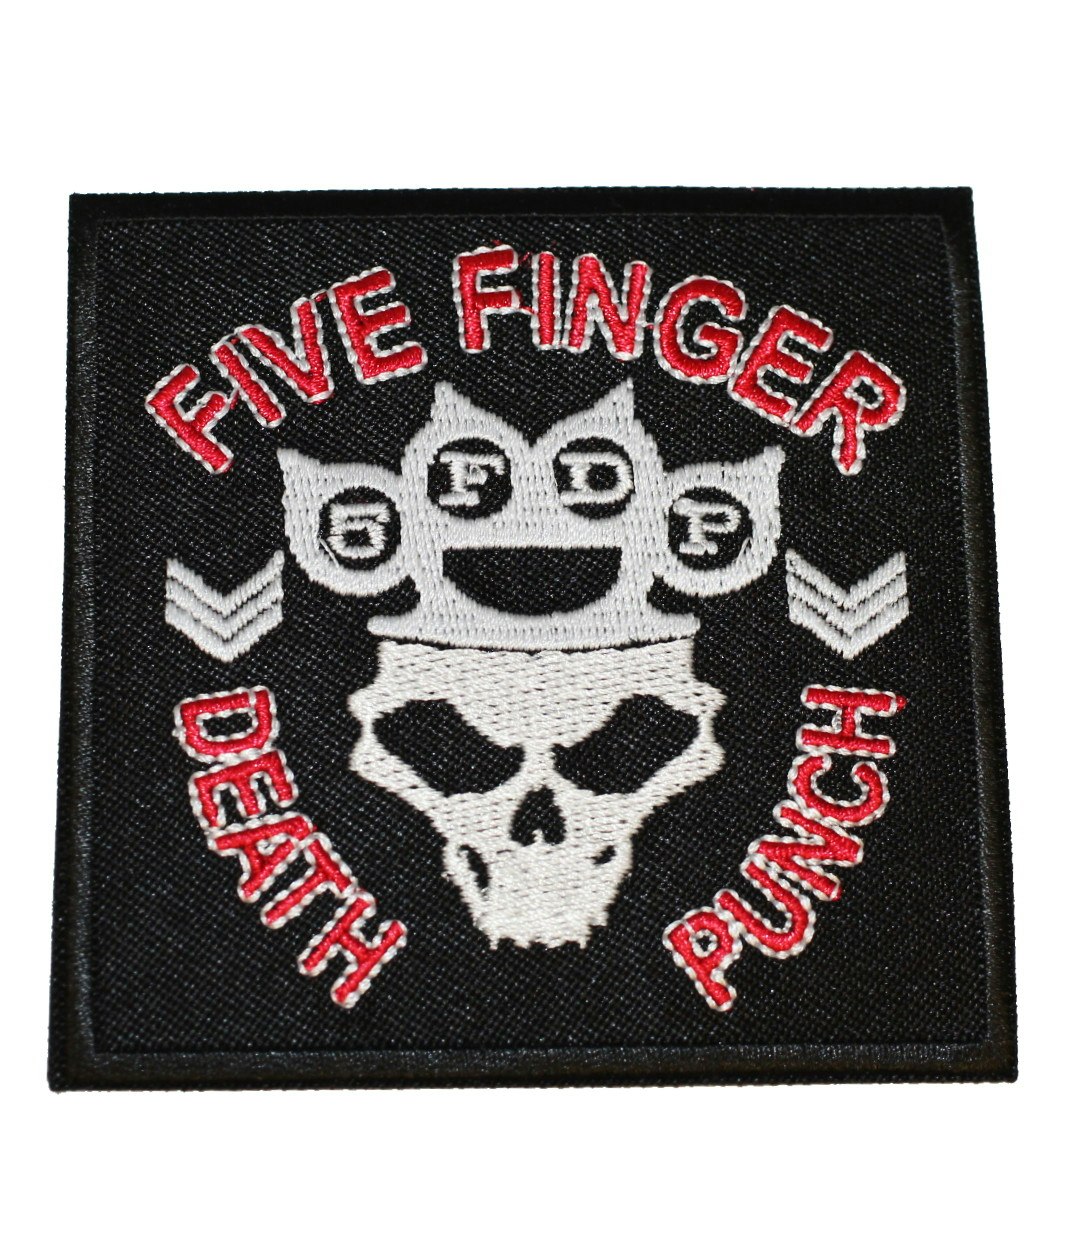 Five finger death punch logo patch